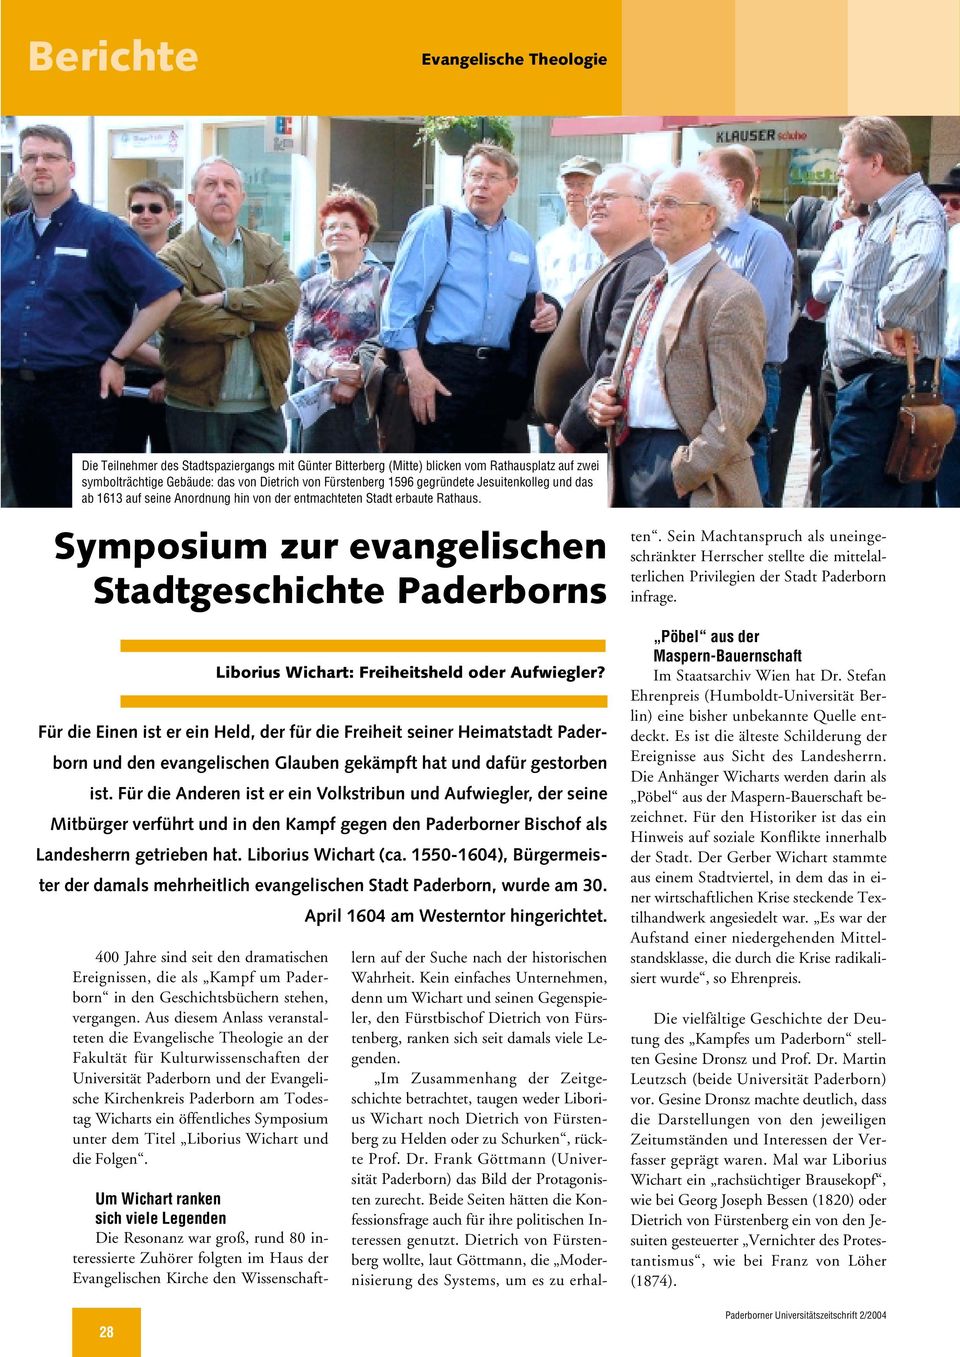 Symposium zur evangelischen Stadtgeschichte Paderborns 400 Jahre sind seit den dramatischen Ereignissen, die als Kampf um Paderborn in den Geschichtsbüchern stehen, vergangen.